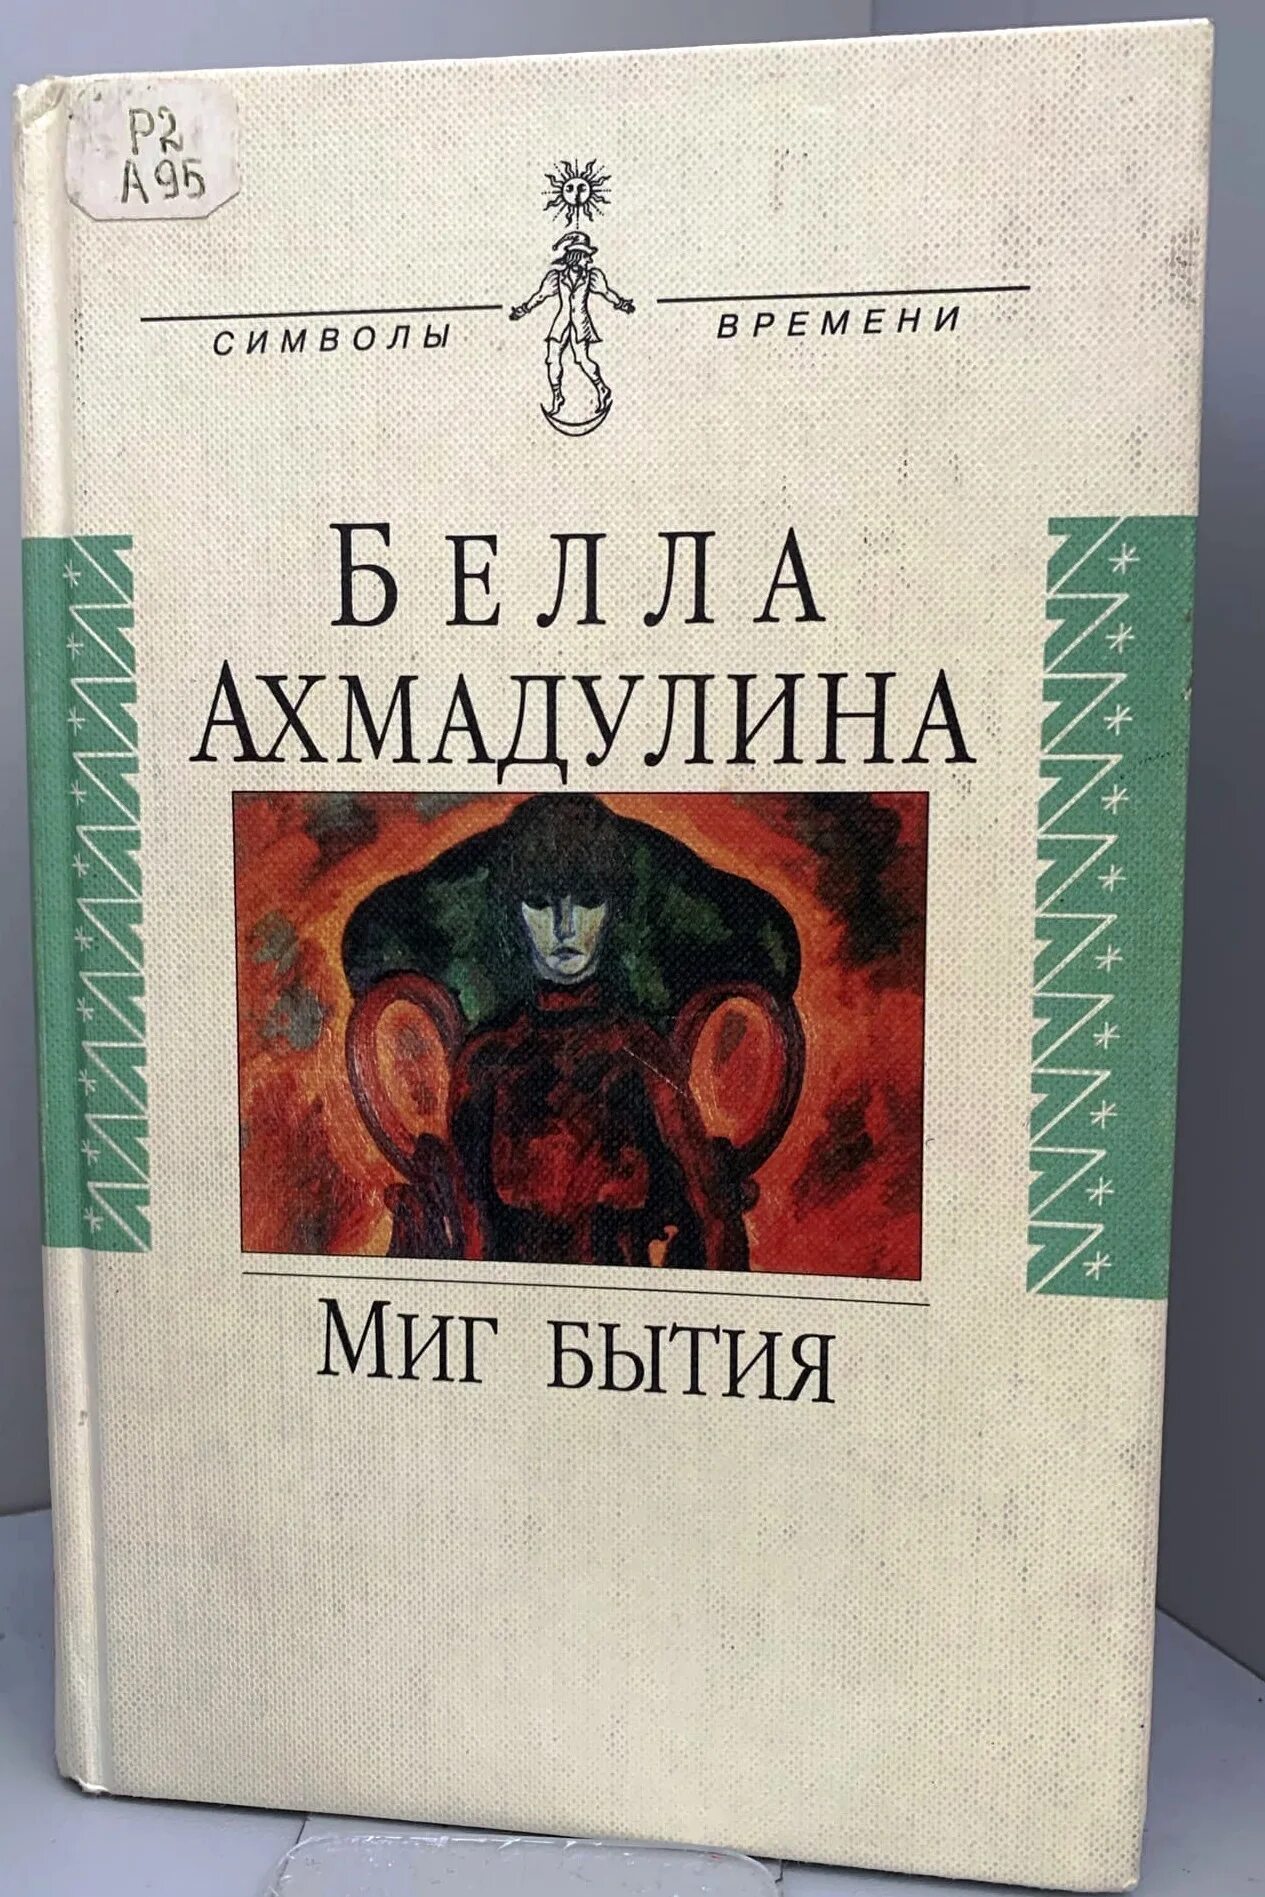 Книга бытия читать на русском. Миг бытия Ахмадулина.